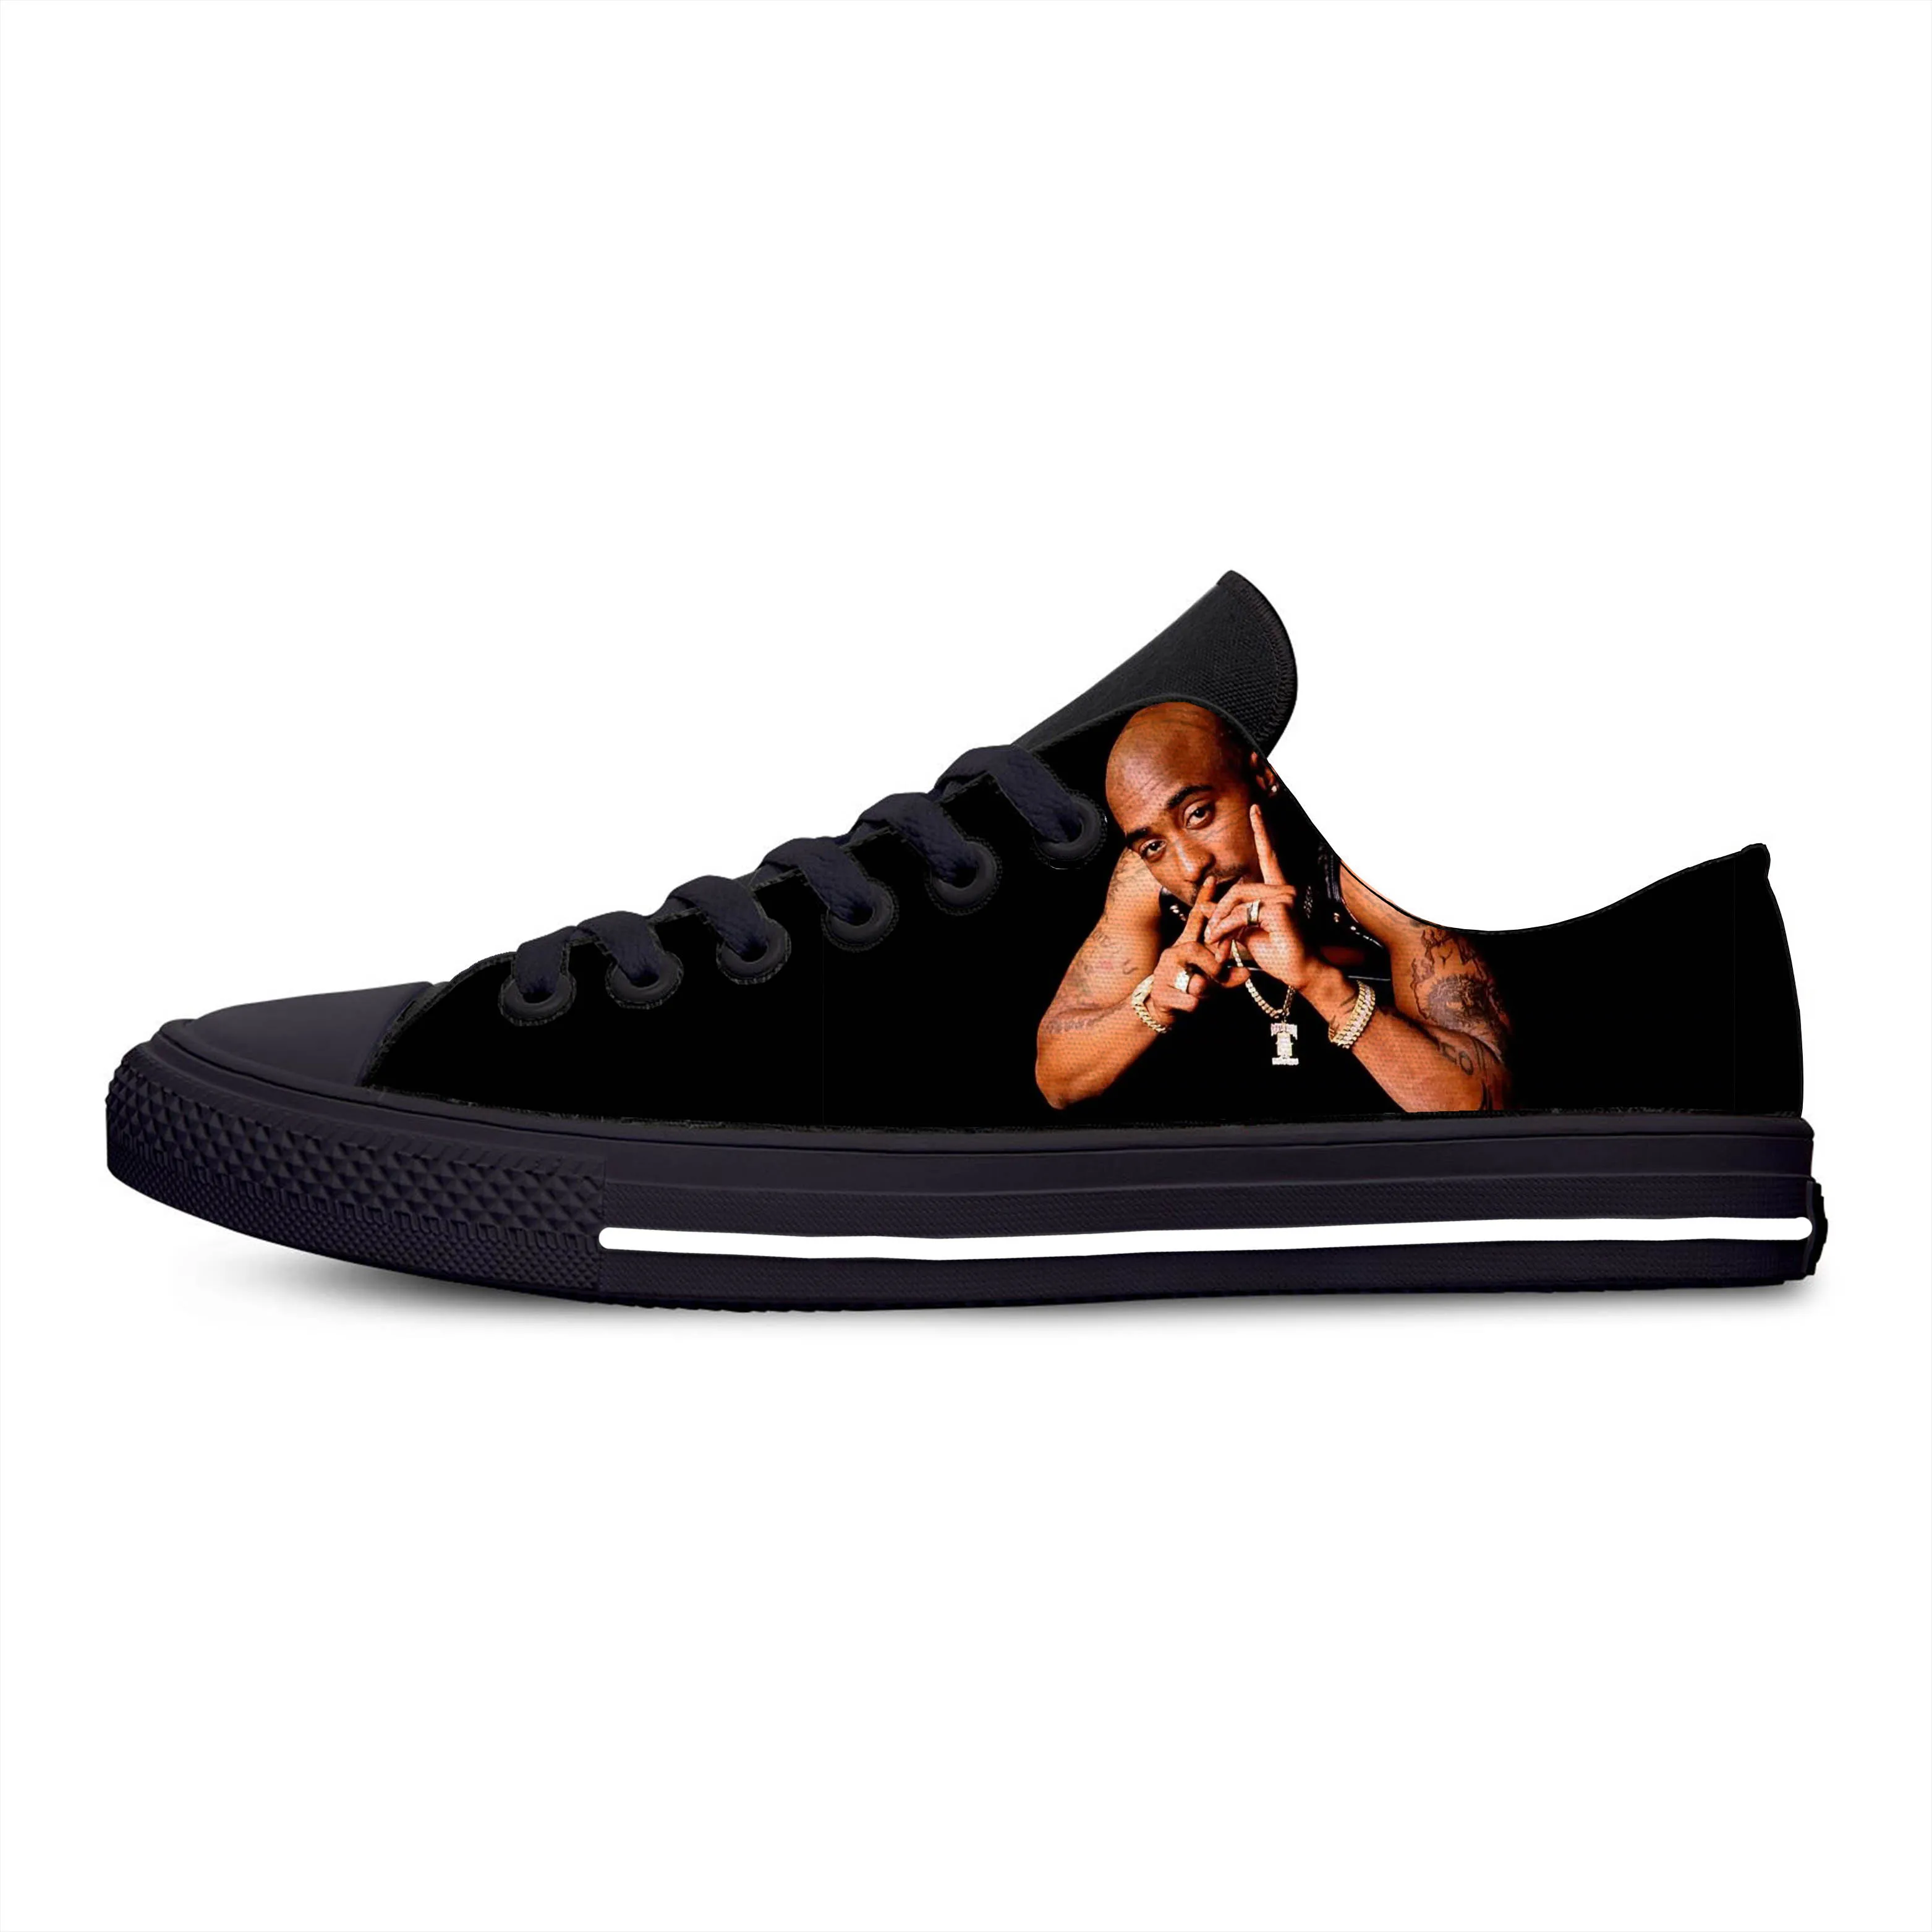 Горячая Мода 3D 2Pac Тупак кроссовки для мужчин/женщин Высокое качество 3D печать ручной работы повседневная обувь - Цвет: 2Pac Tupac 3